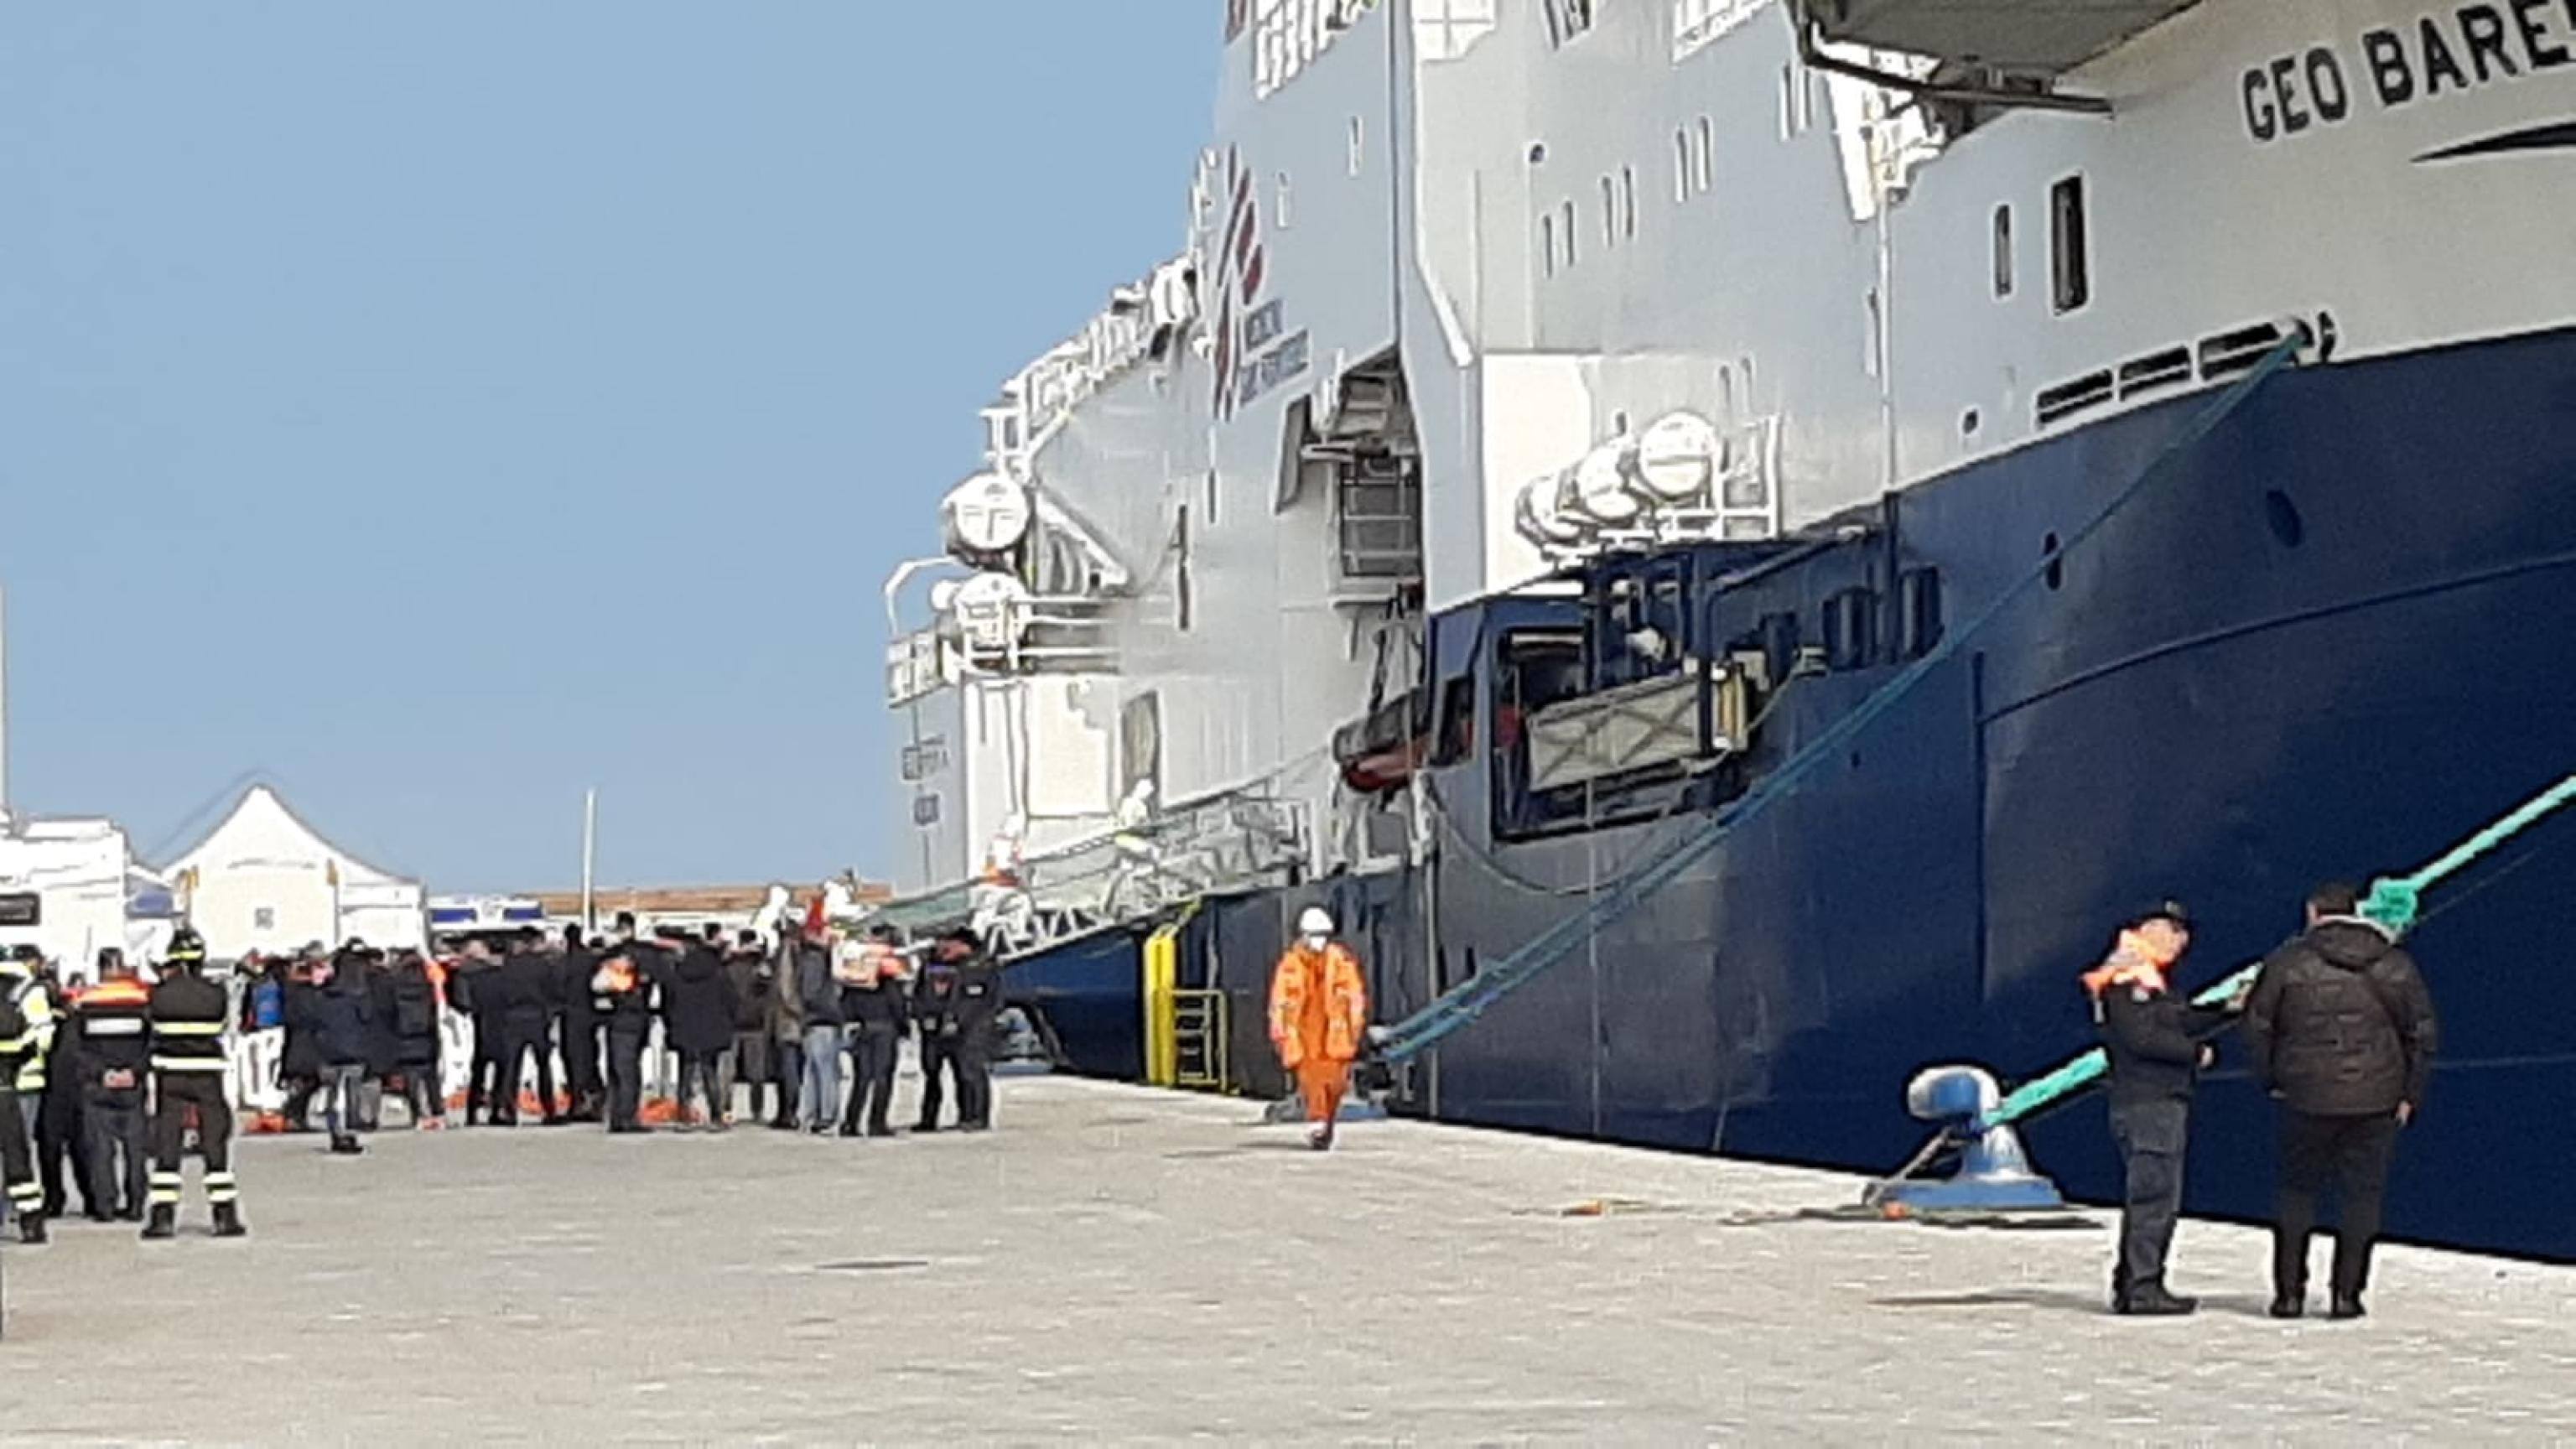 La nave soccorso di Medici Senza Frontiere "Geo Barents" nel porto di Ancona, 17 febbraio 2023. A bordo dell'imbarcazione 48 migranti salvati al largo delle coste libiche nei giorni scorsi, tra cui 9 minorenni. 
ANSA/ DANIELE CAROTTI